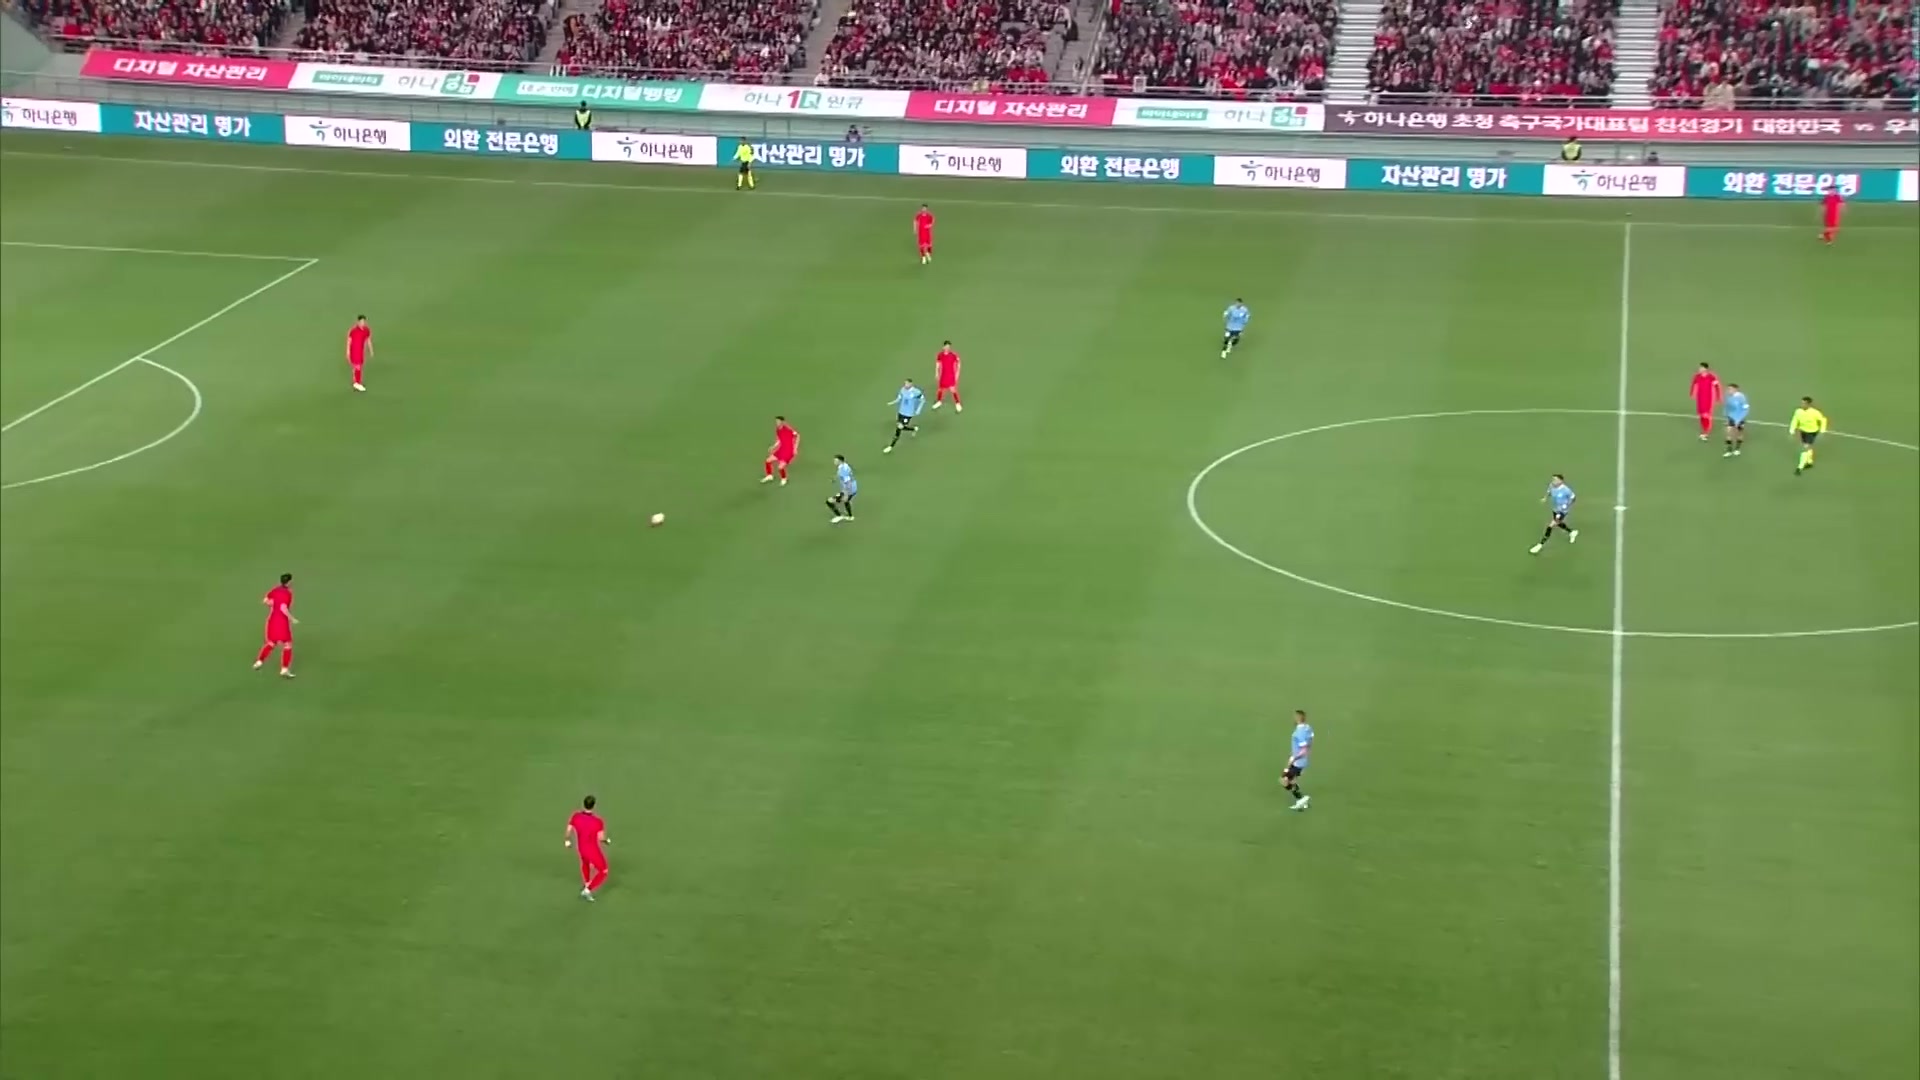 [集锦]友谊赛-黄仁范、贝西诺破门 韩国1-2乌拉圭